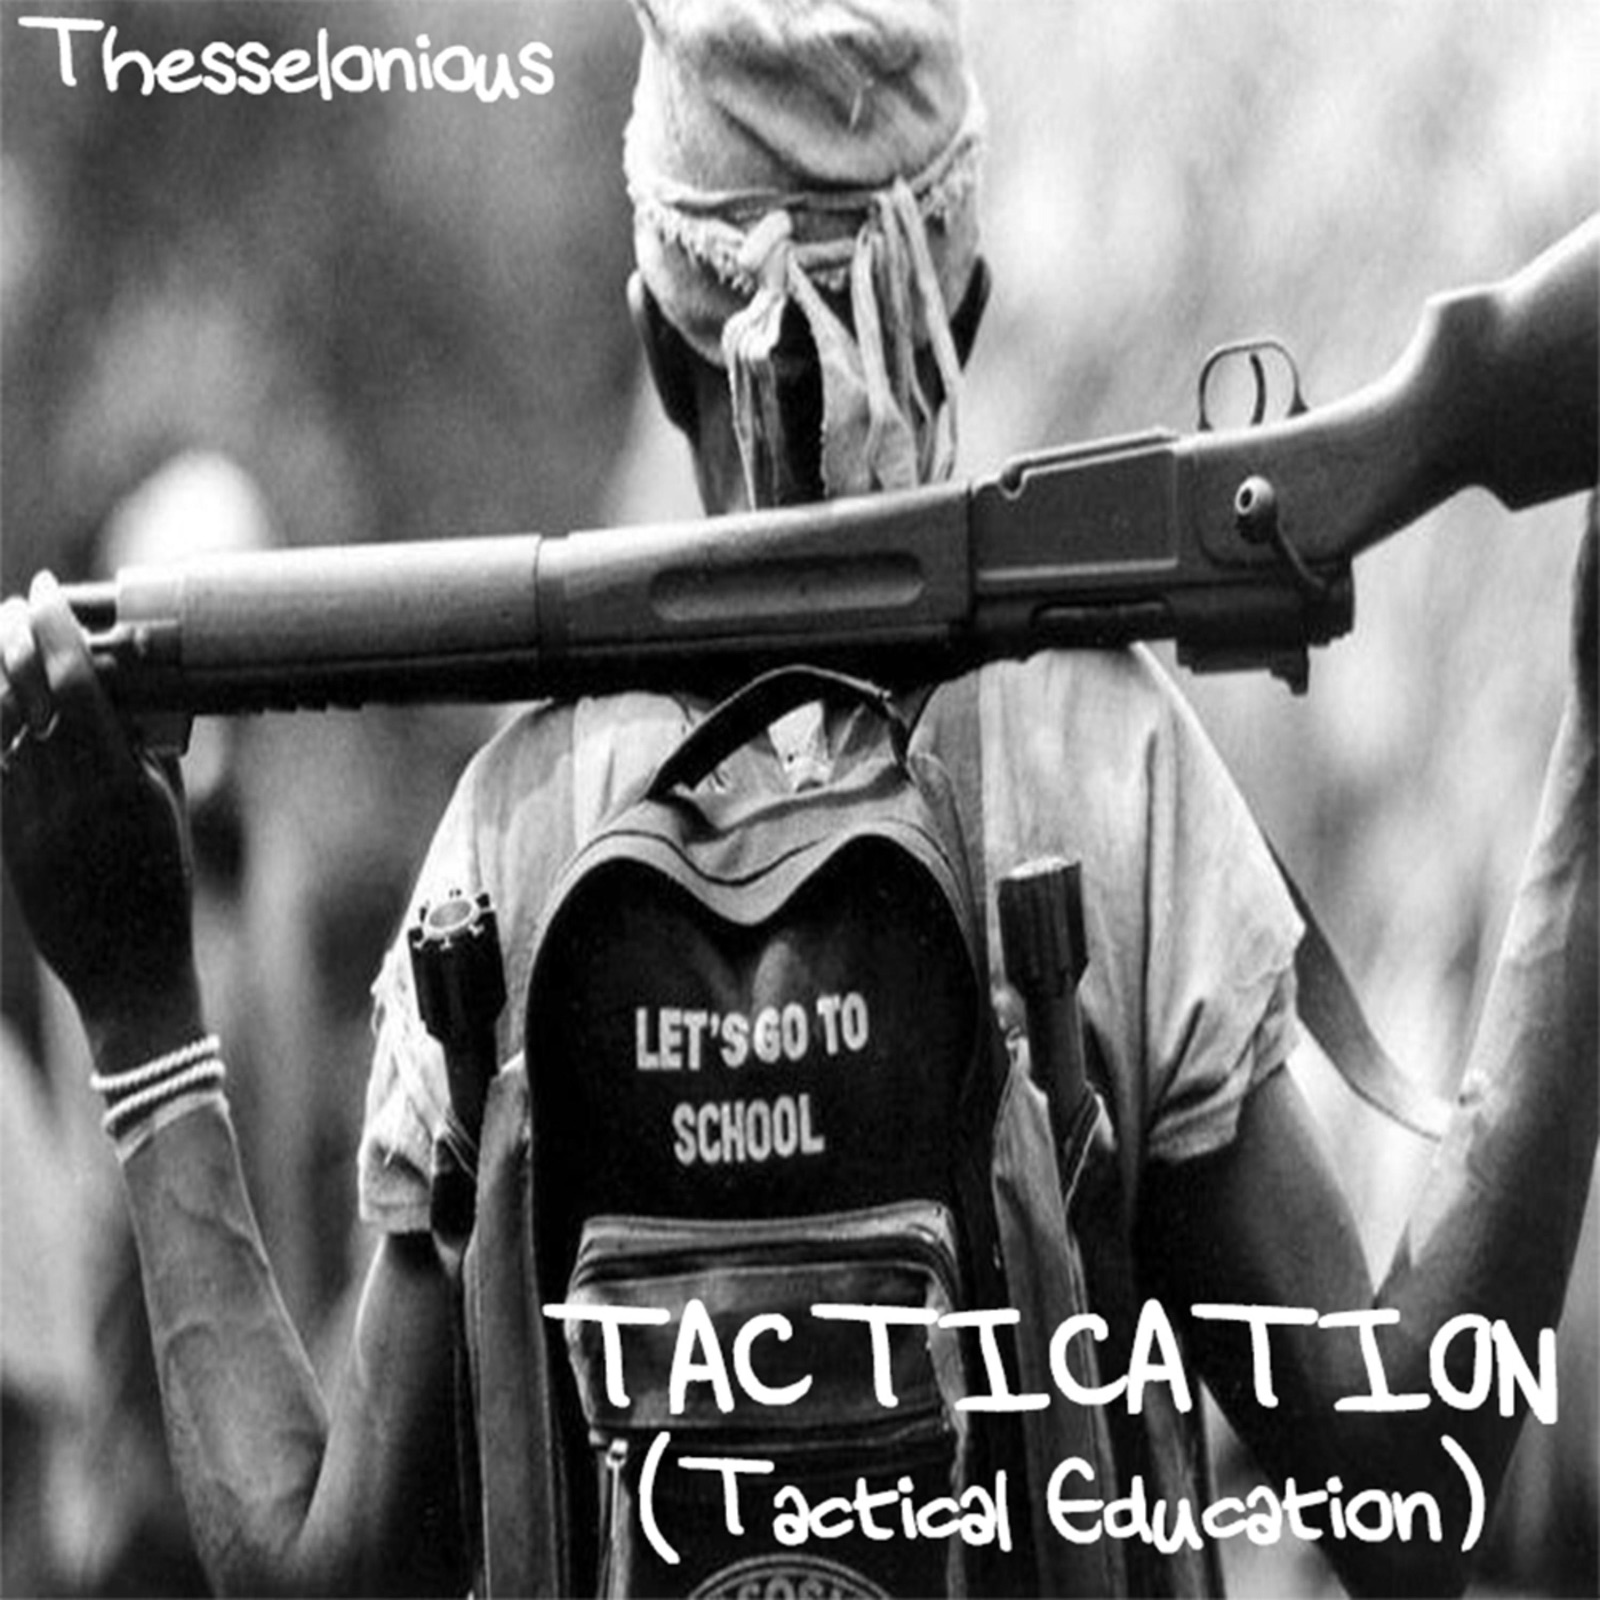 Tactication